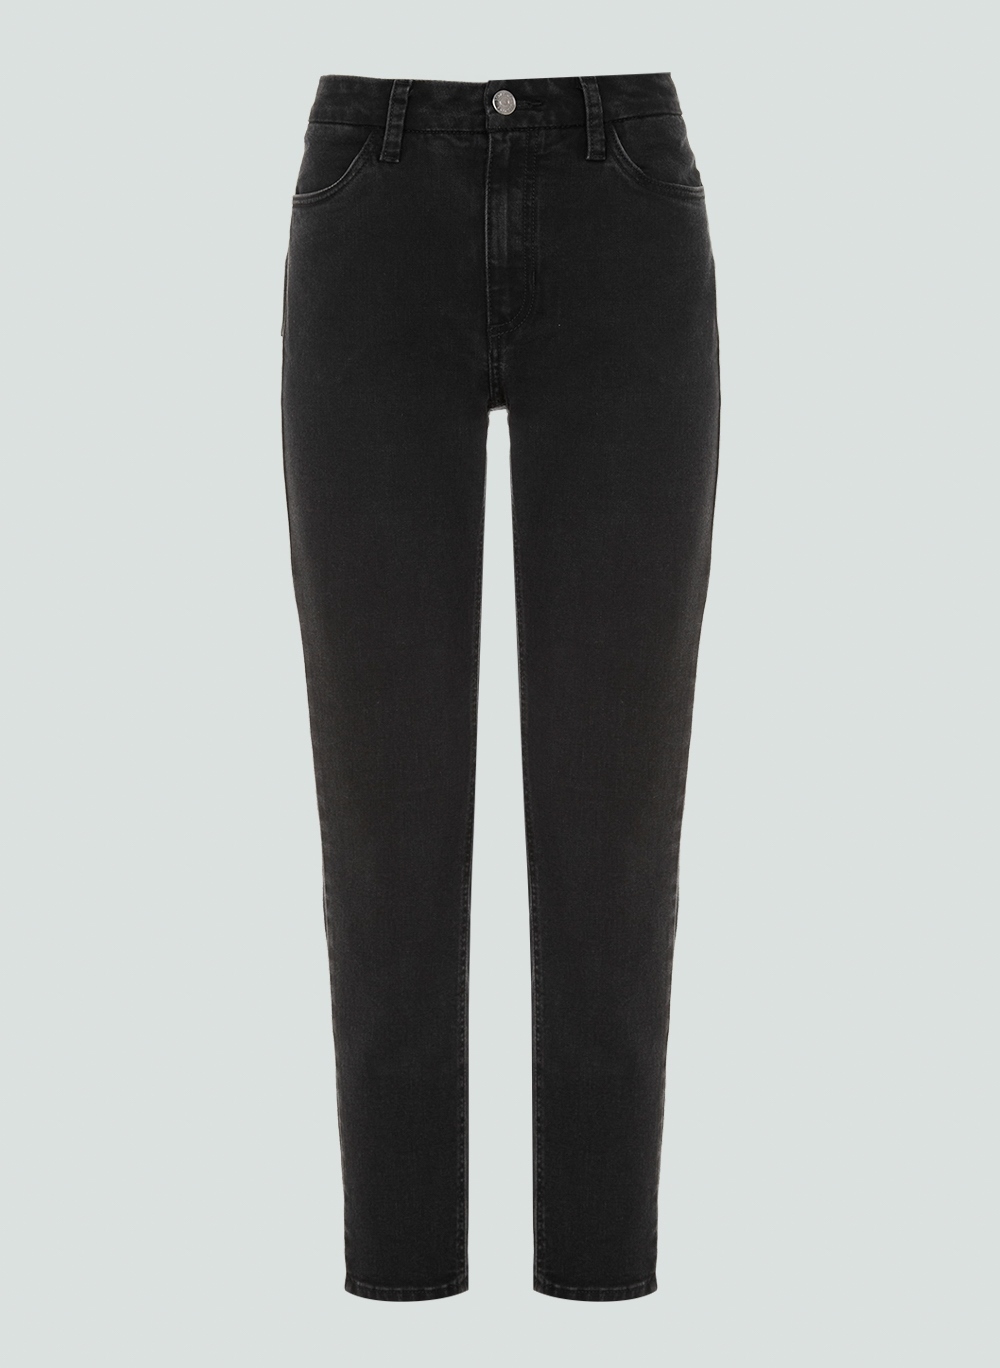 Bermuda Jeans Feminina- Shortinho 3172 Moda Verão Mulher